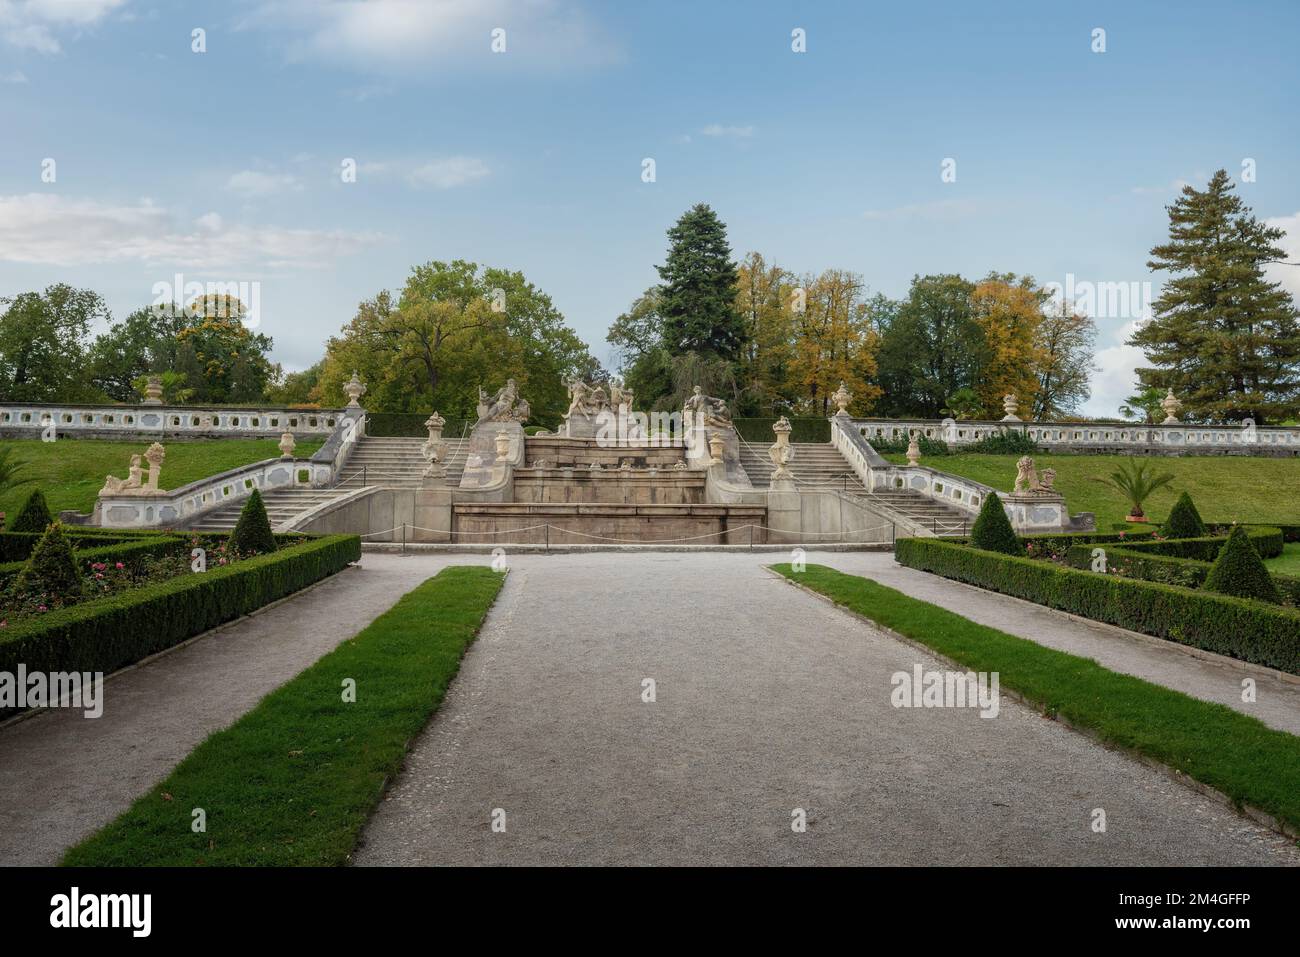 Kaskadenbrunnen im Schlossgarten Cesky Krumlov - Cesky Krumlov, Tschechische Republik Stockfoto